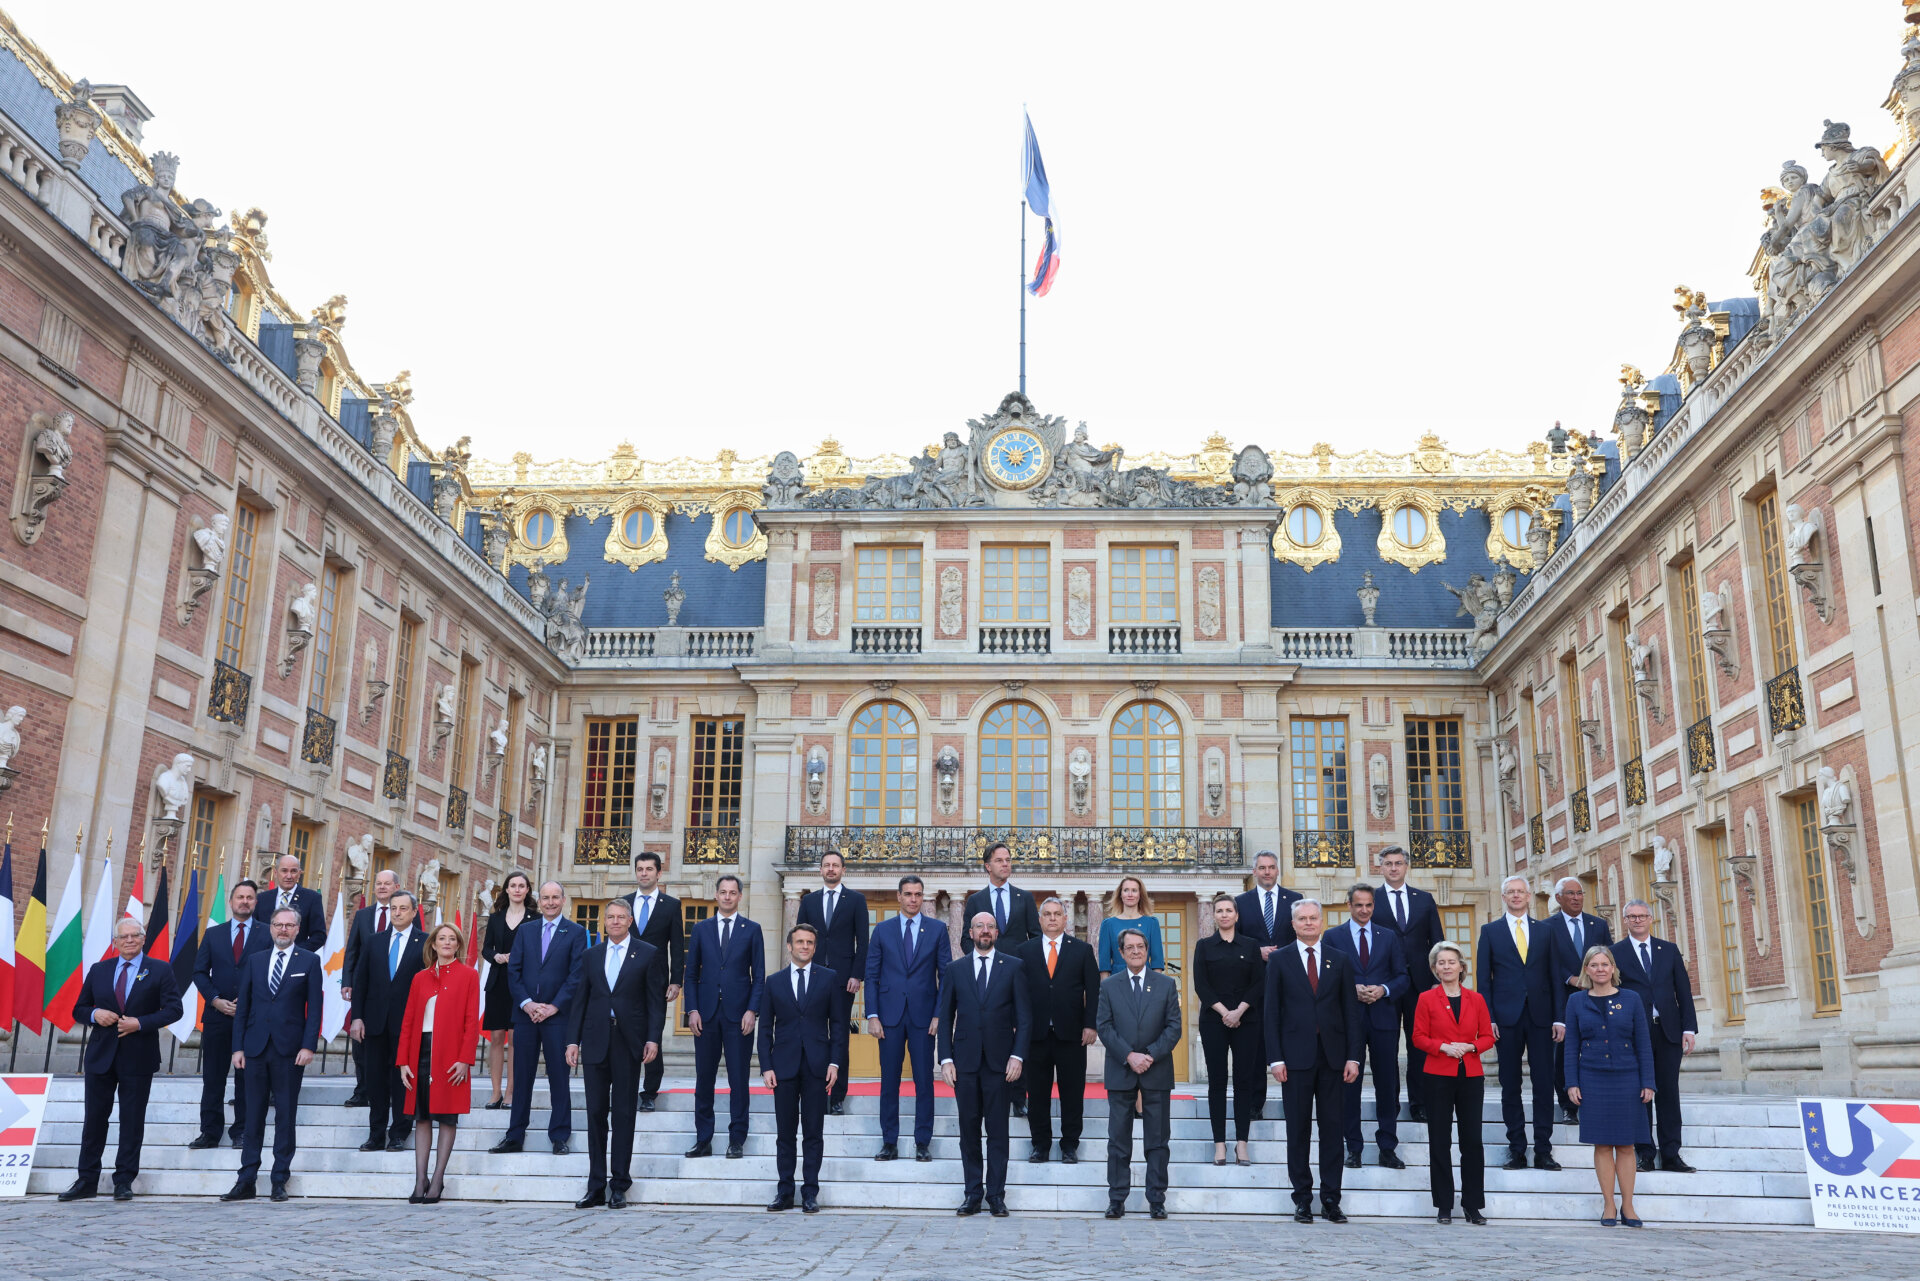 Familienfoto des Europäischen Rates 2022